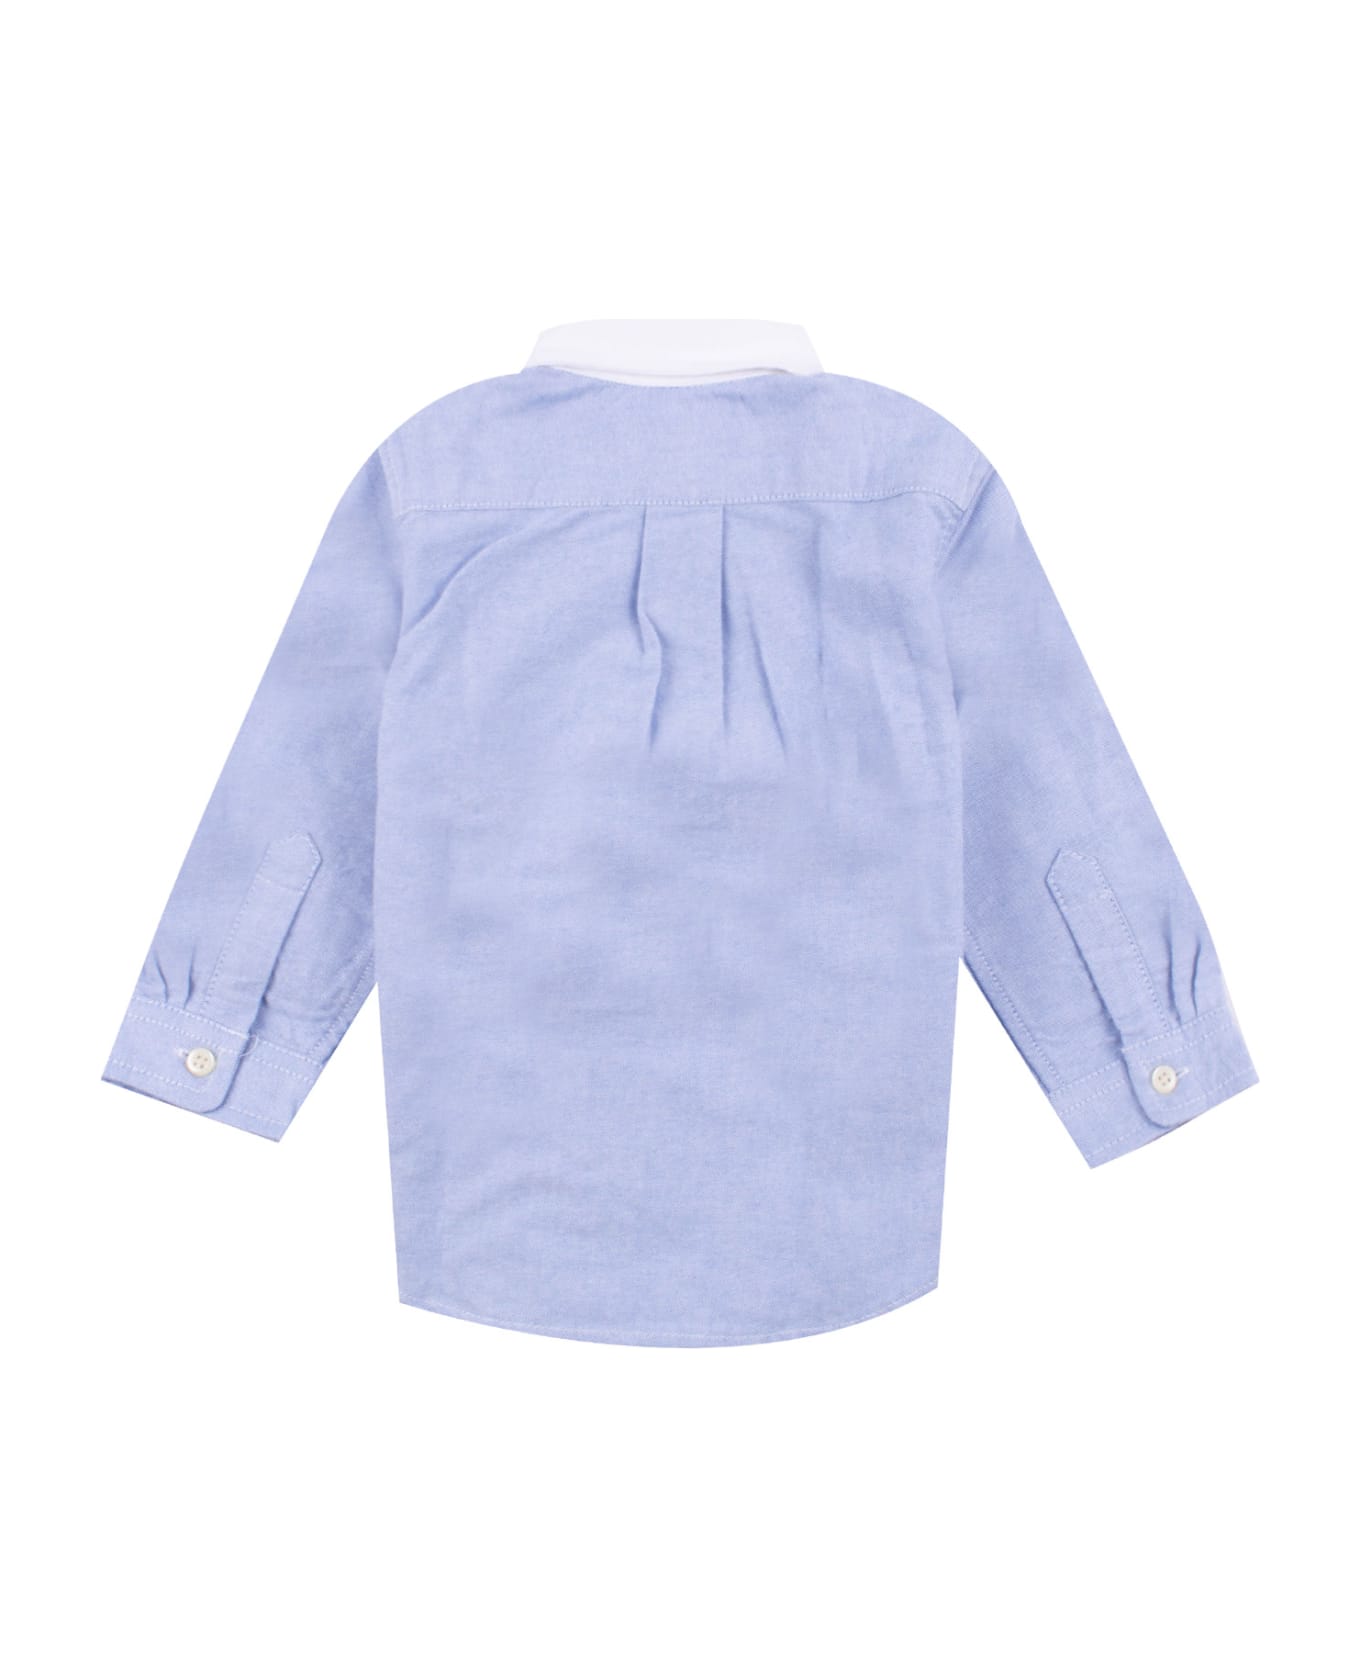 Ralph Lauren Cotton Shirt - Light blue シャツ